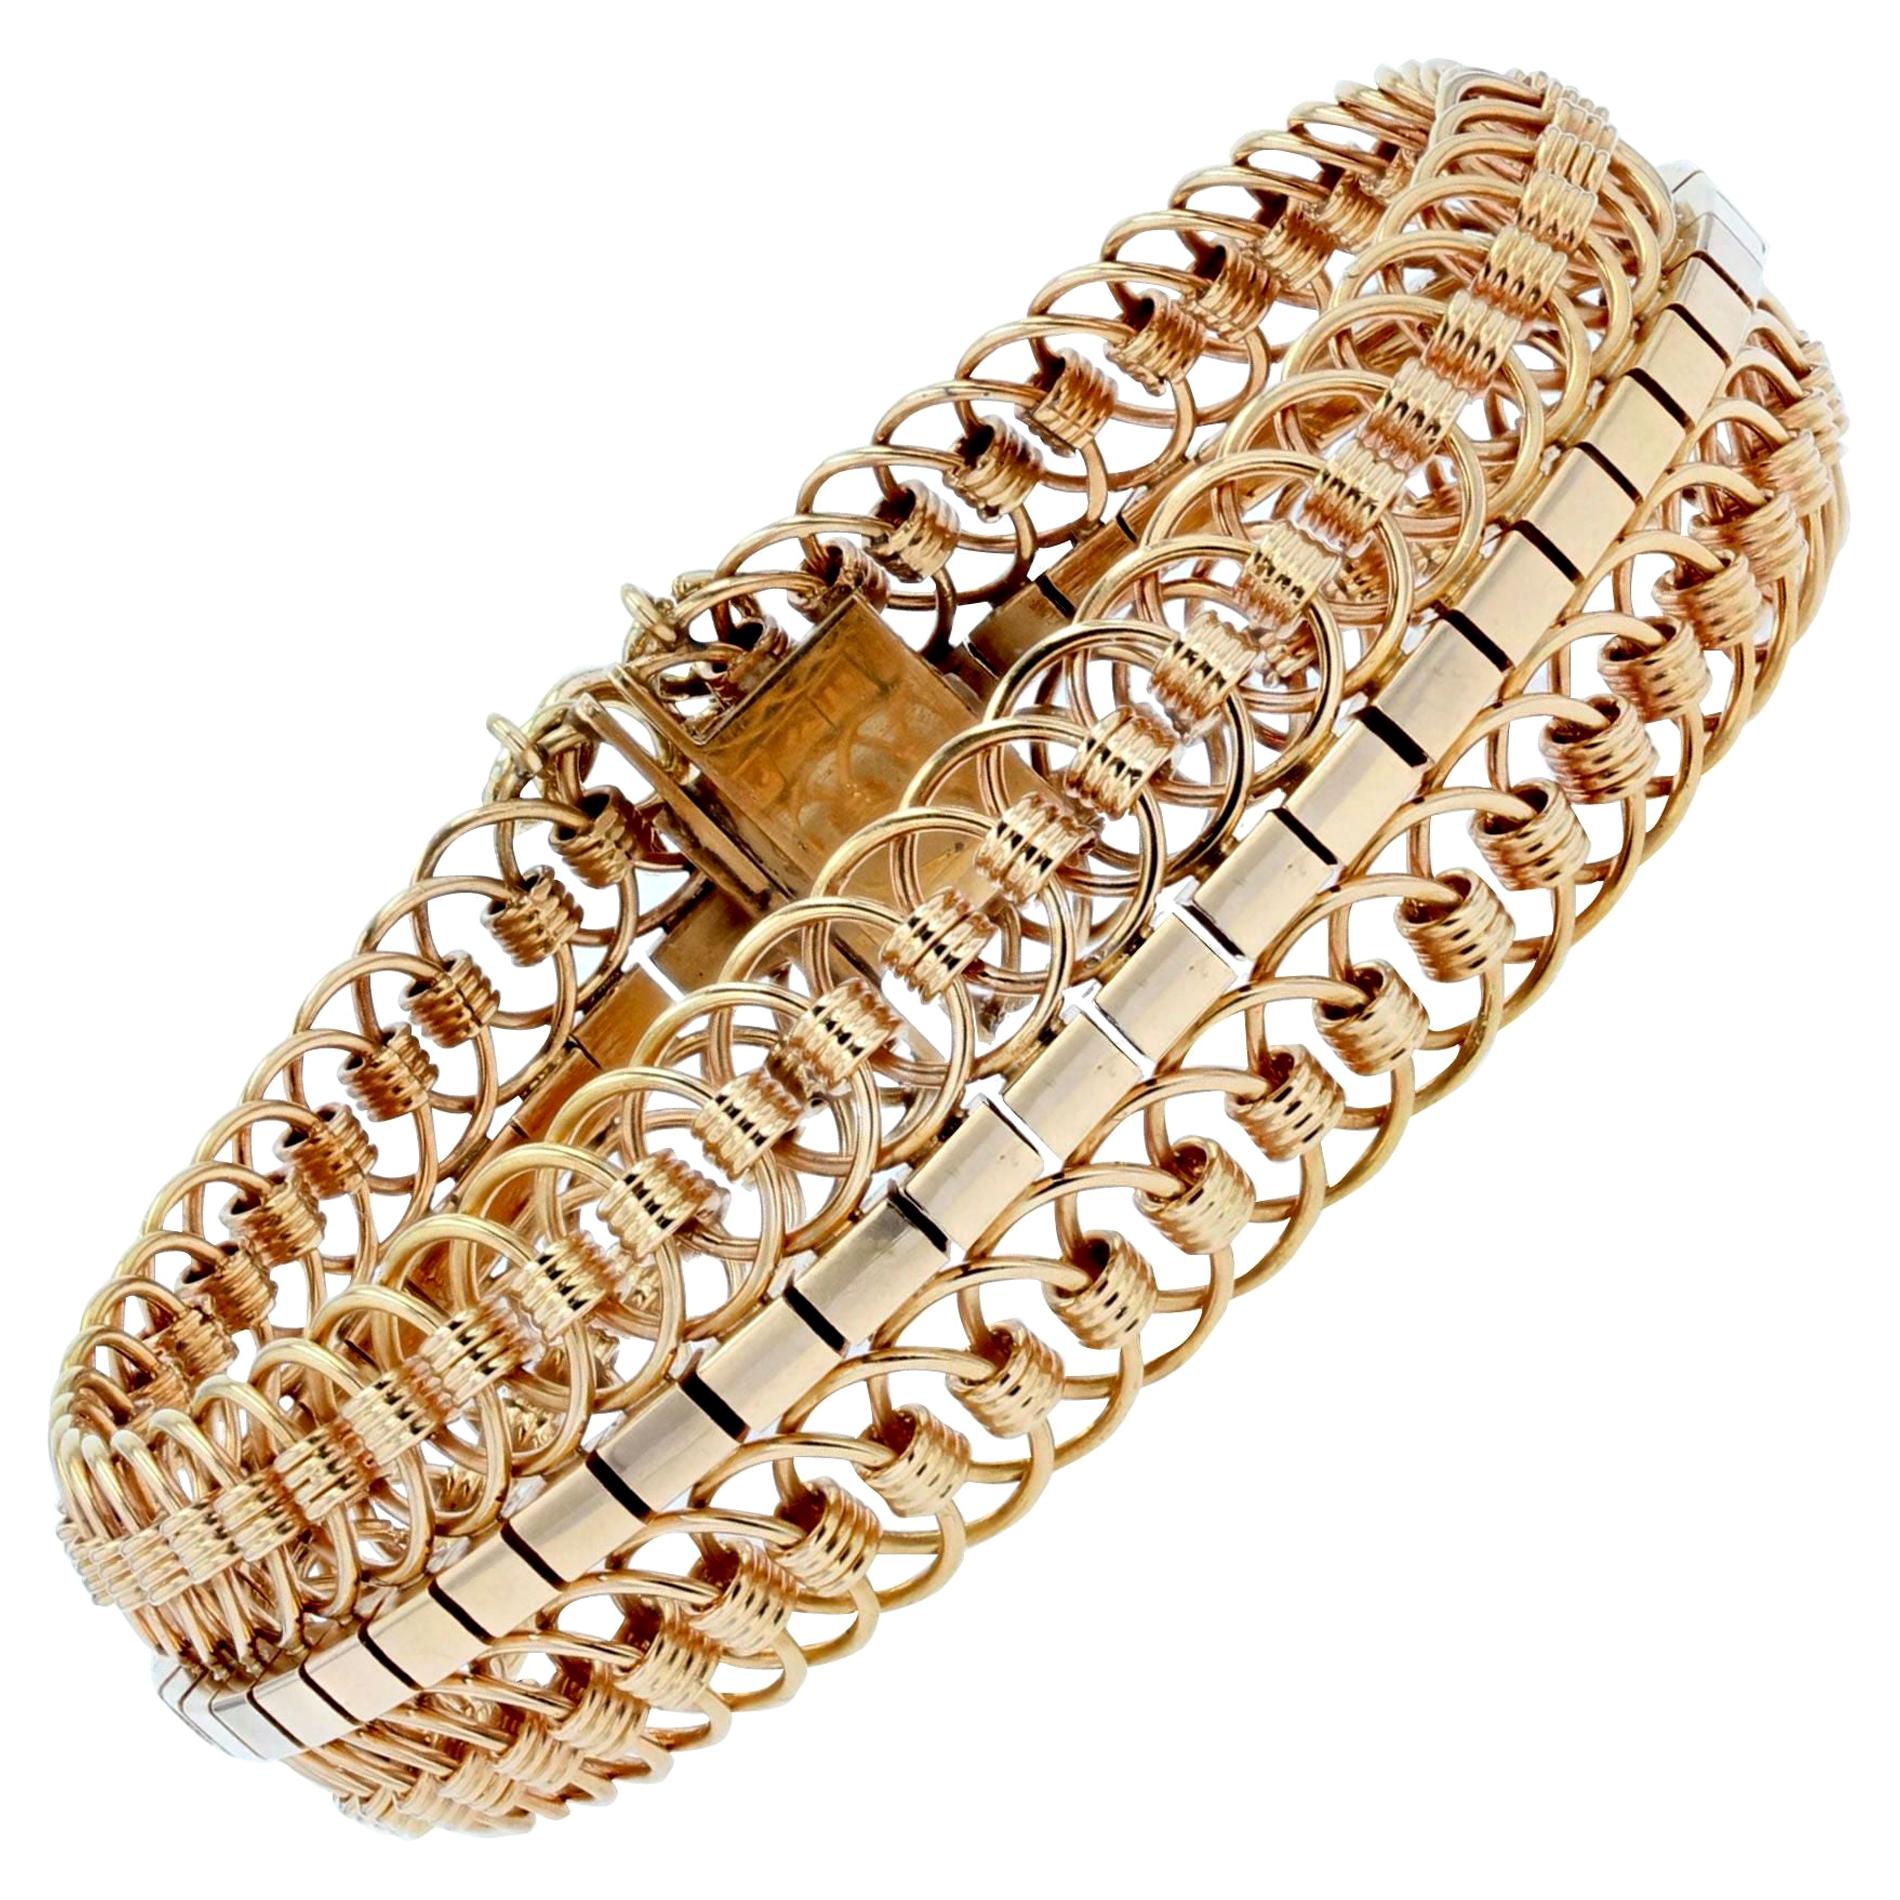 1950s - Bracelet en or jaune 18 carats à mailles articulées